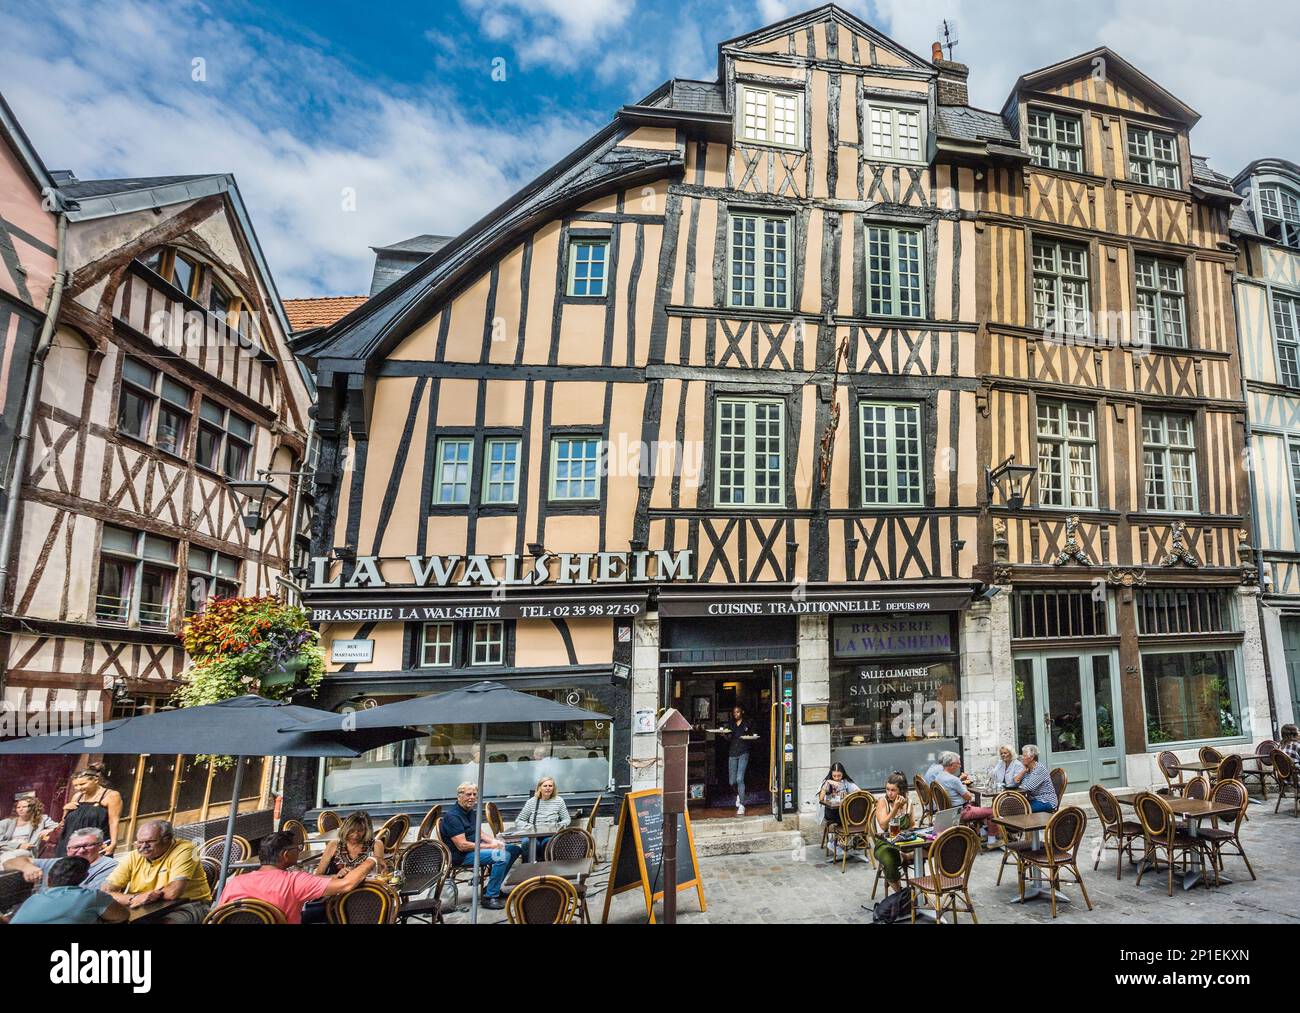 Restaurant traditionnel de la rue Martainville dans les vieux quartiers médiévaux de Rouen, Normandie, France Banque D'Images